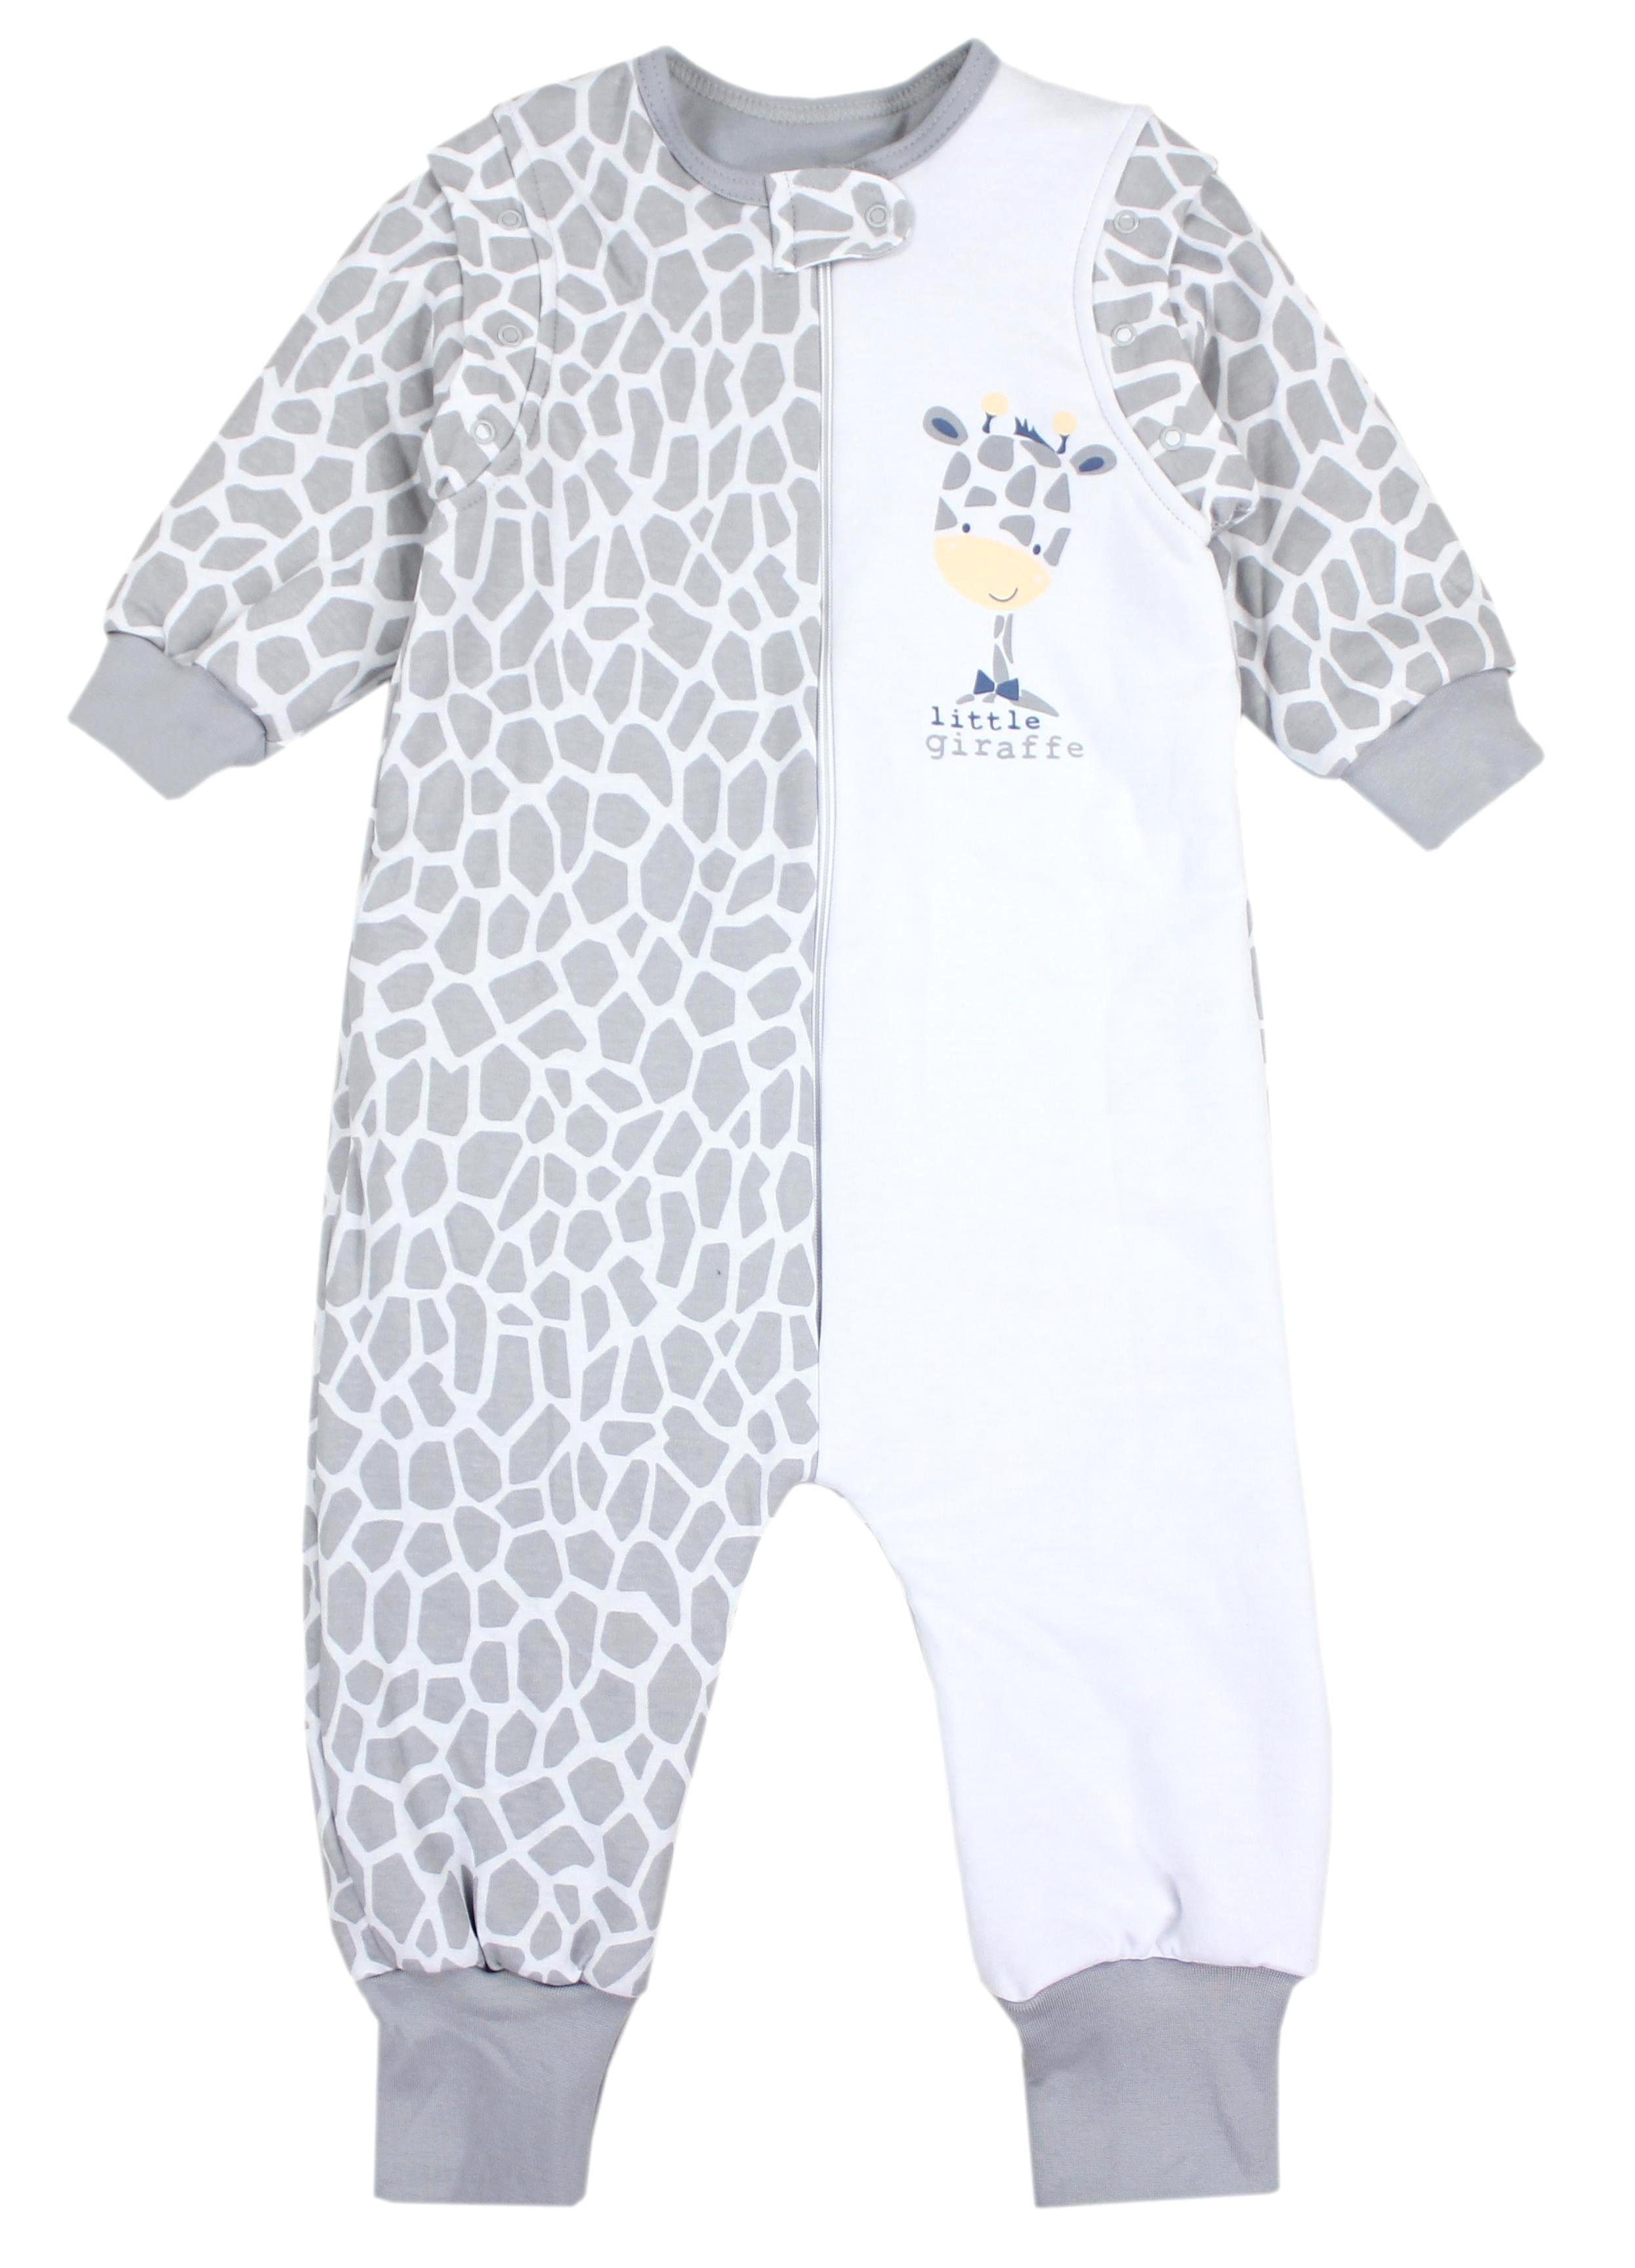 TupTam Babyschlafsack mit Beinen und Ärmel Winter OEKO-TEX zertifiziert Unisex Giraffe